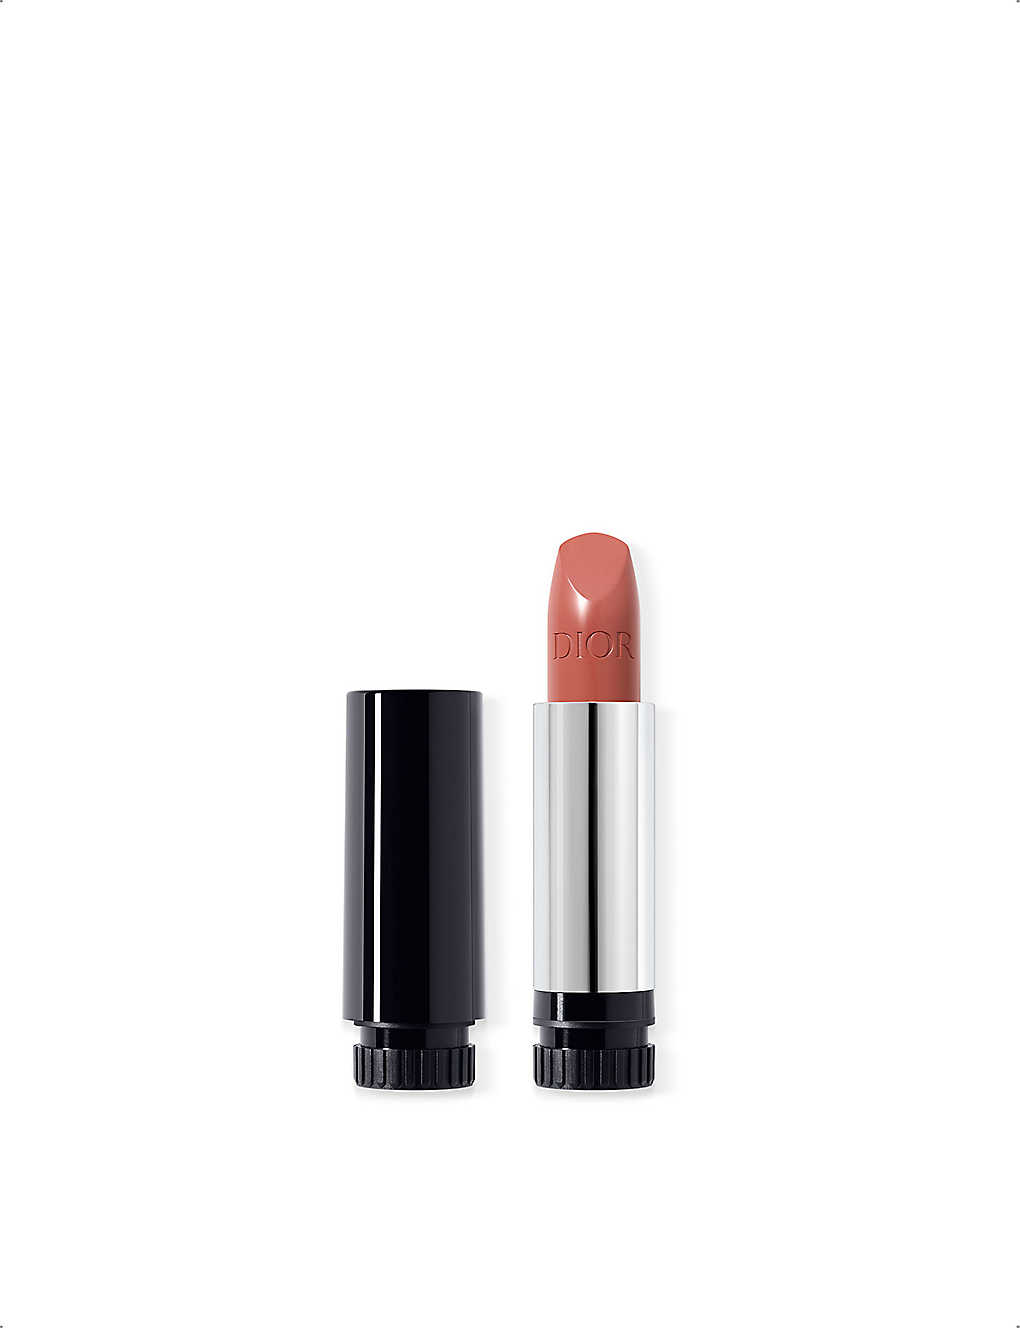 Dior 434 Promenade Rouge Satin Lipstick Refill 3.5g